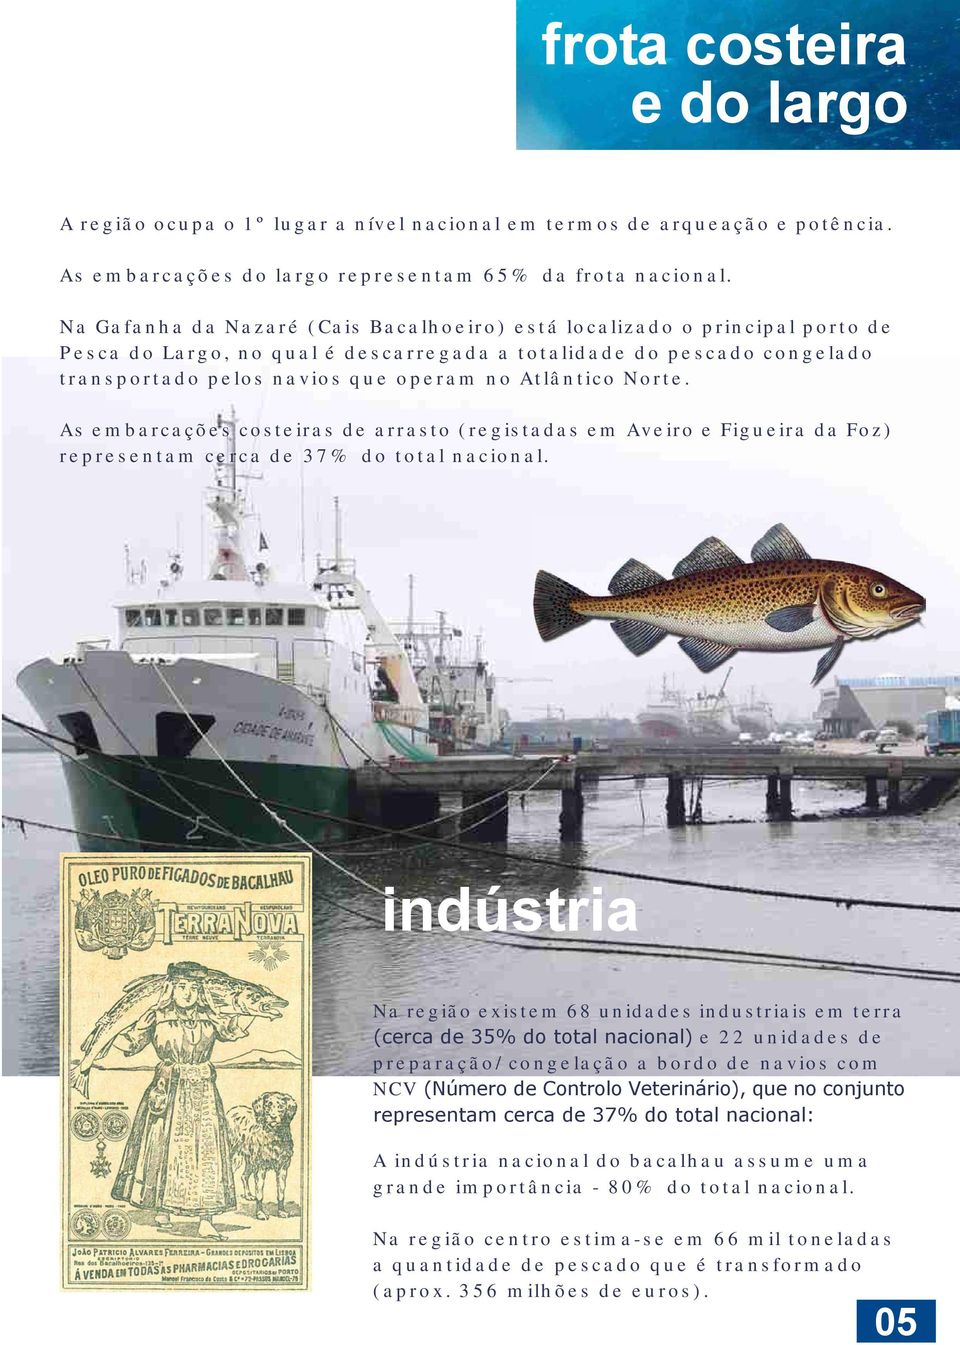 Norte. As embarcações costeiras de arrasto (registadas em Aveiro e Figueira da Foz) representam cerca de 37% do total nacional.